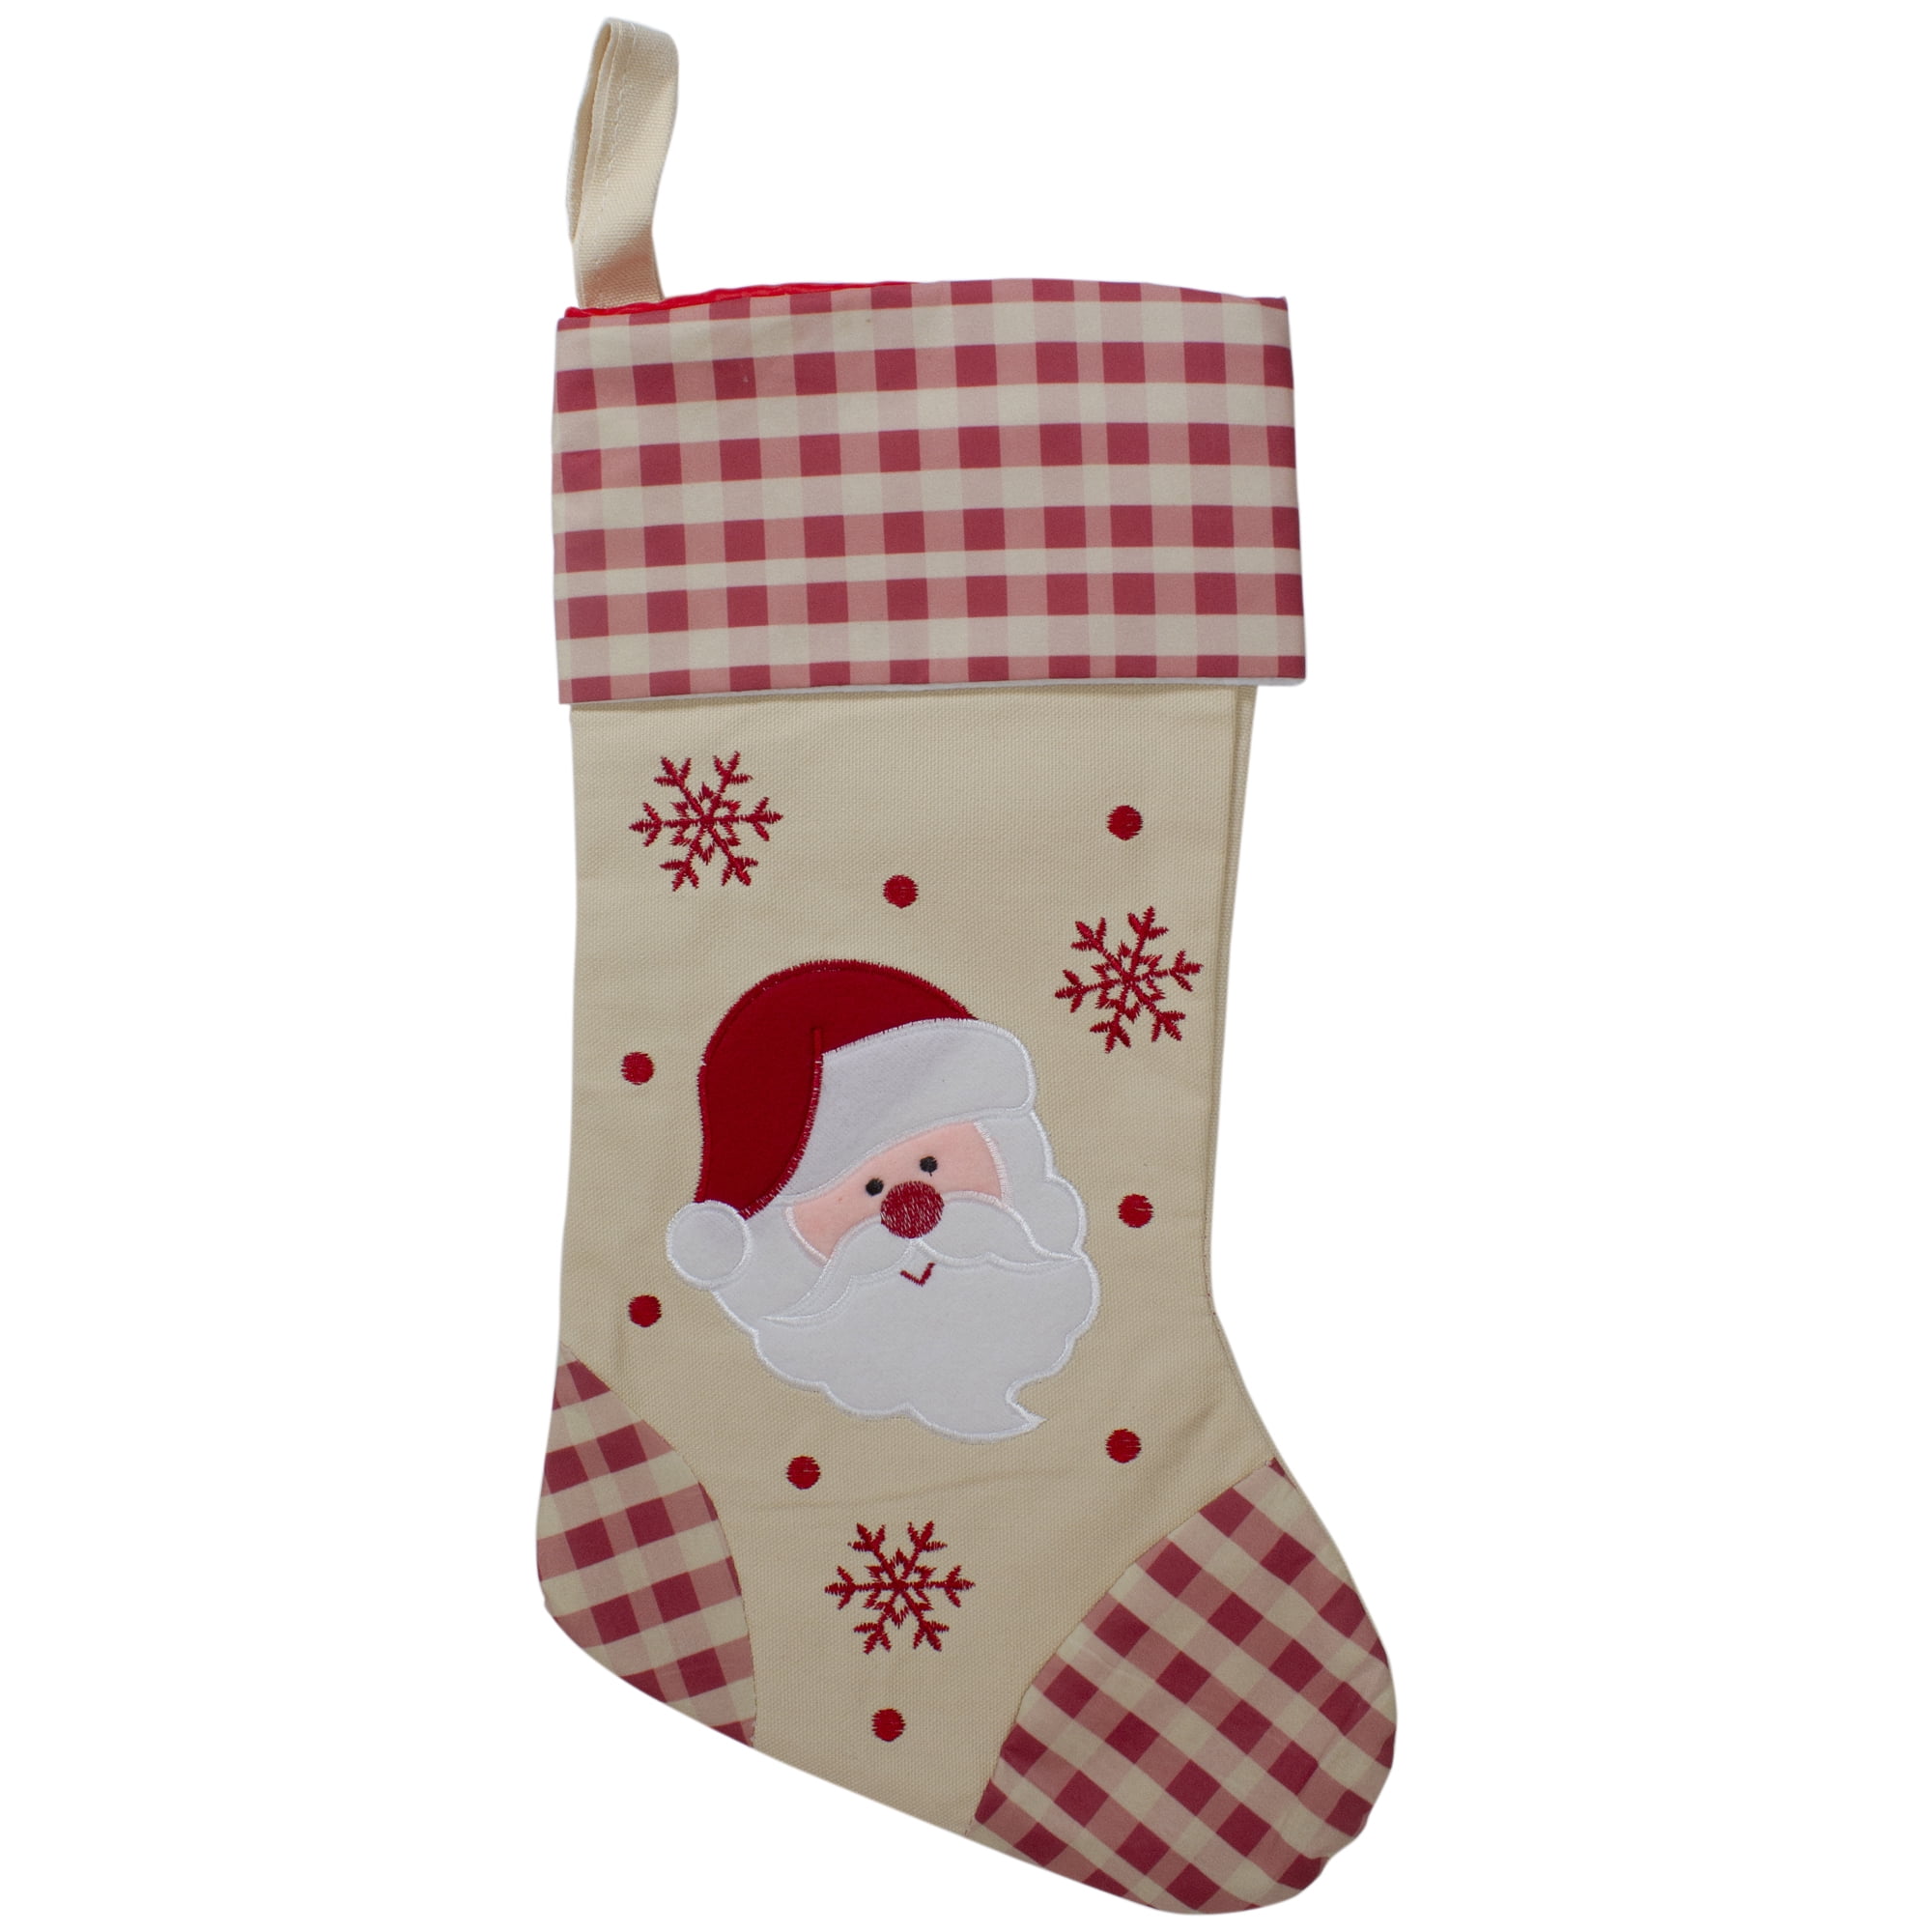 Personalised Luxury Xmas Stocking Sack HOHOHO 18" Deluxe Christmas Santa 